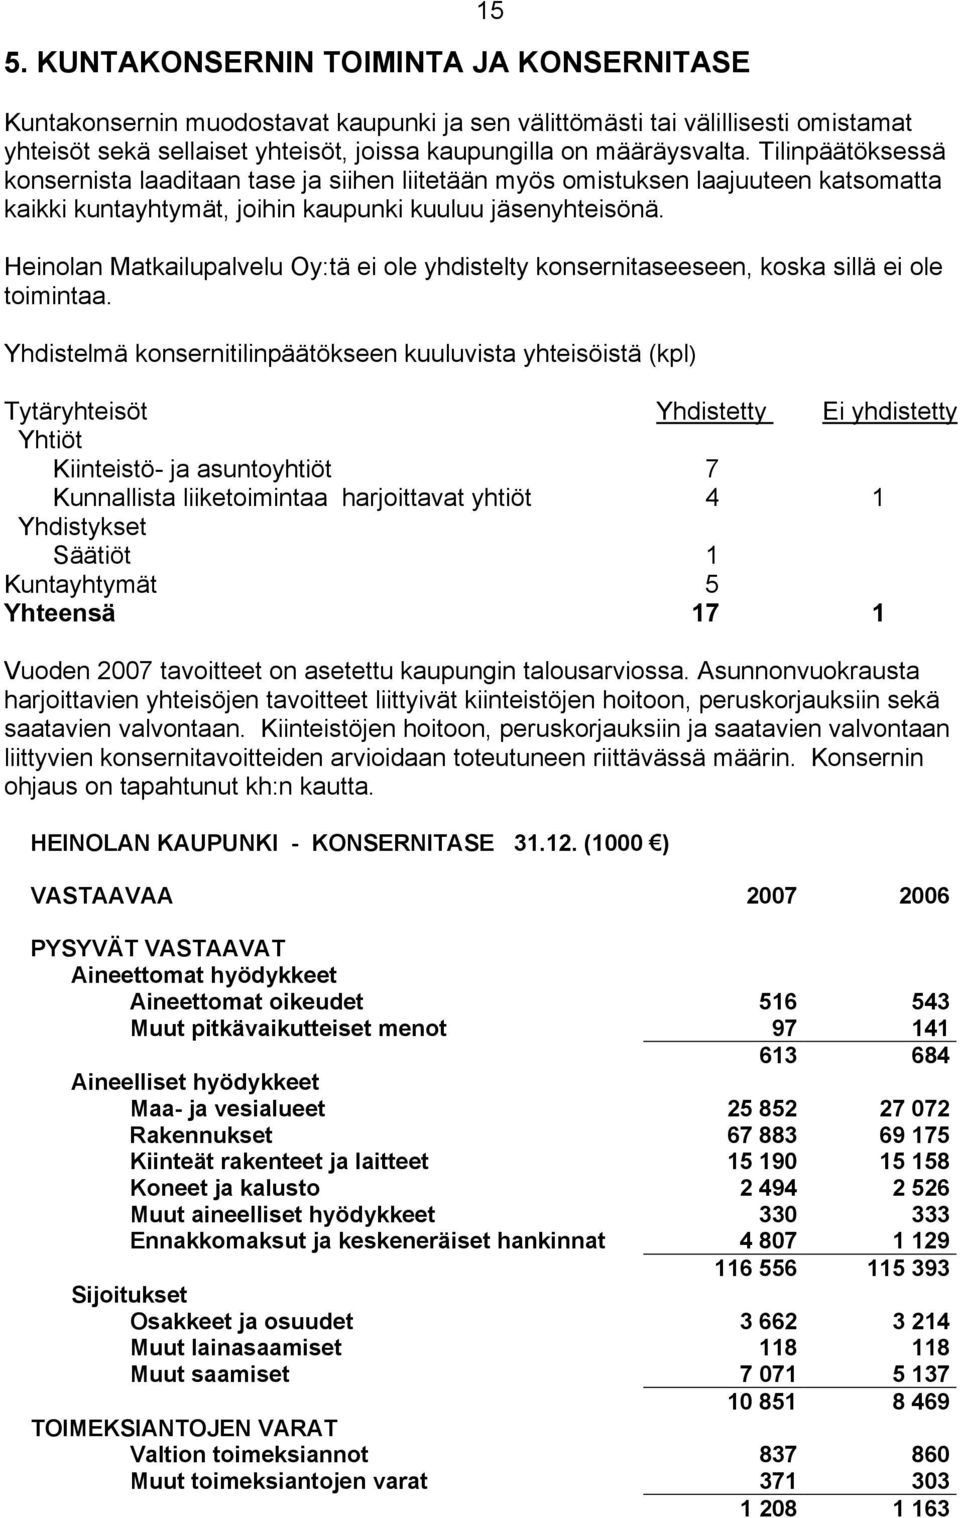 Heinolan Matkailupalvelu Oy:tä ei ole yhdistelty konsernitaseeseen, koska sillä ei ole toimintaa.